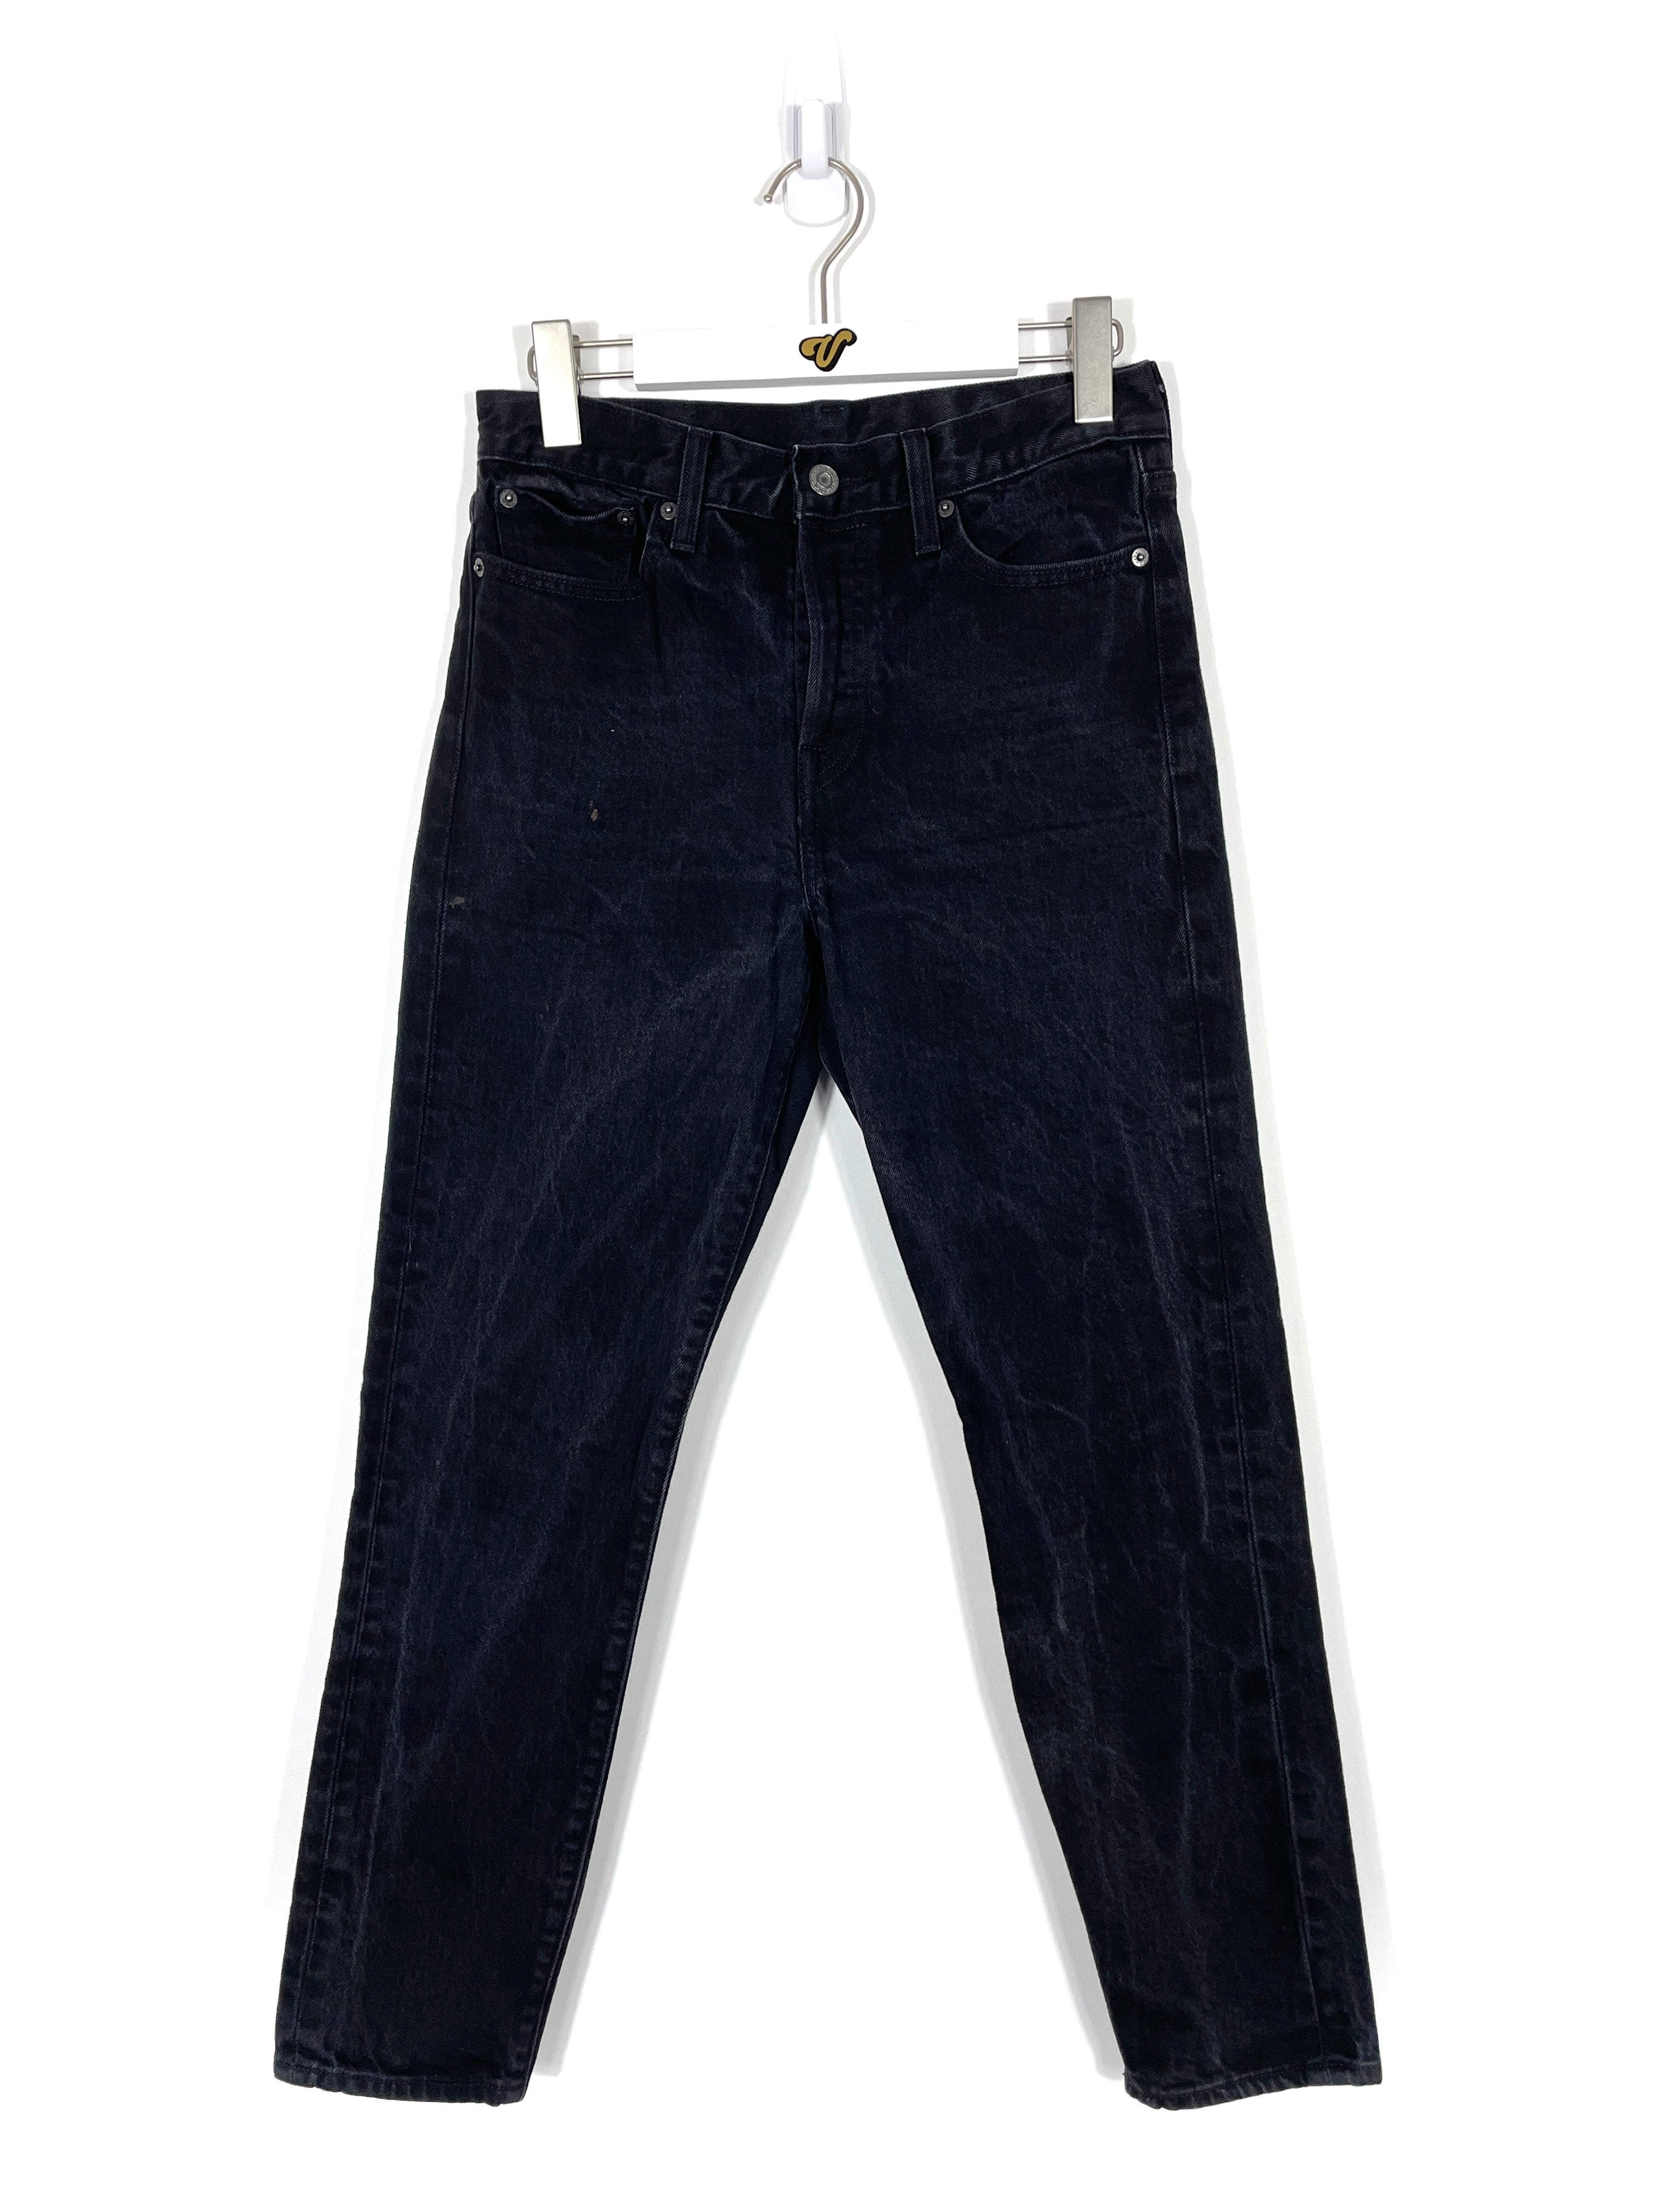 Vintage Levis Jeans - Women's 28x28